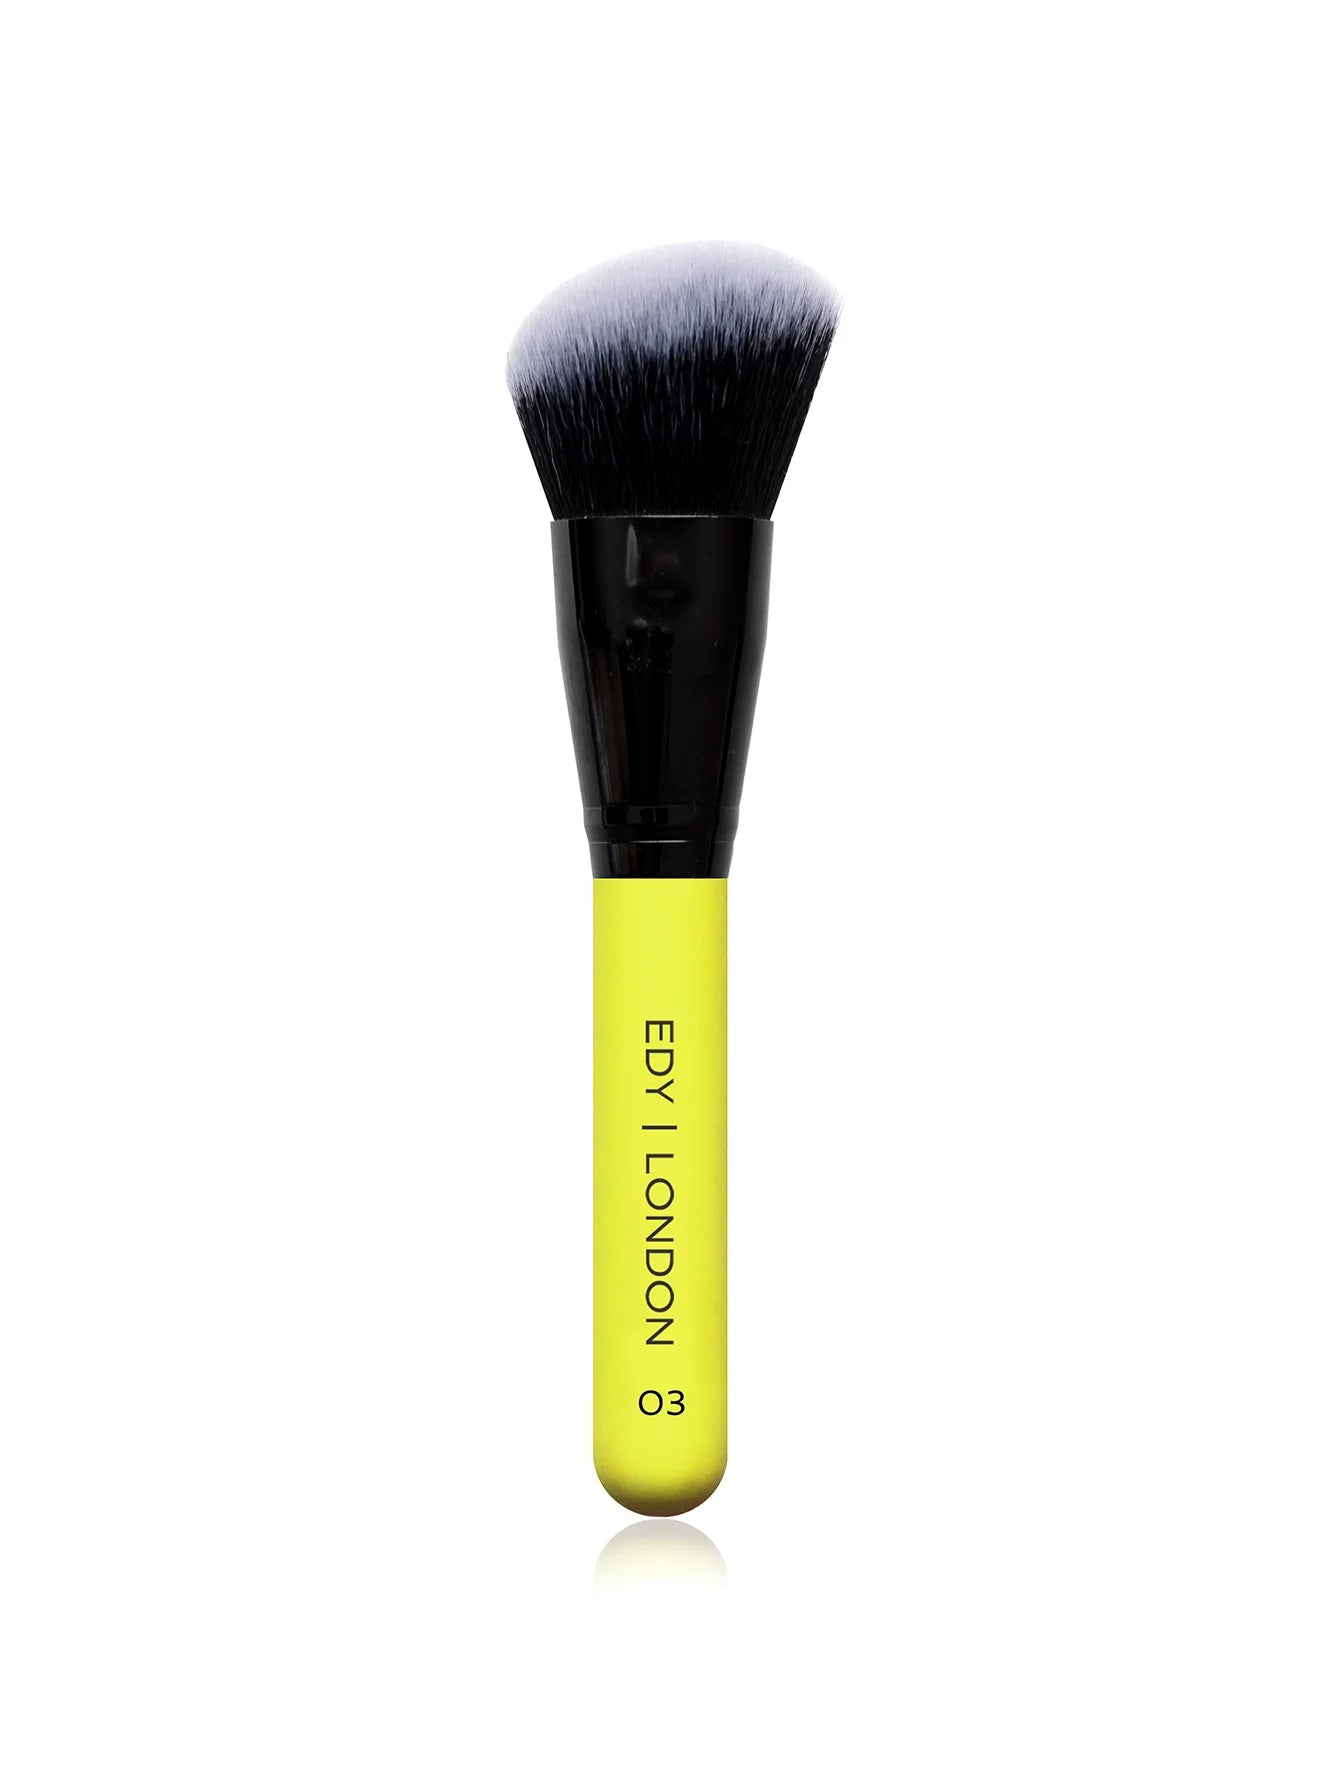 Angled Large Contour Face Brush 03 Make-up Brush EDY LONDON Lemon   - EDY LONDON PRODUCTS UK - The Best Makeup Brushes - shop.edy.london